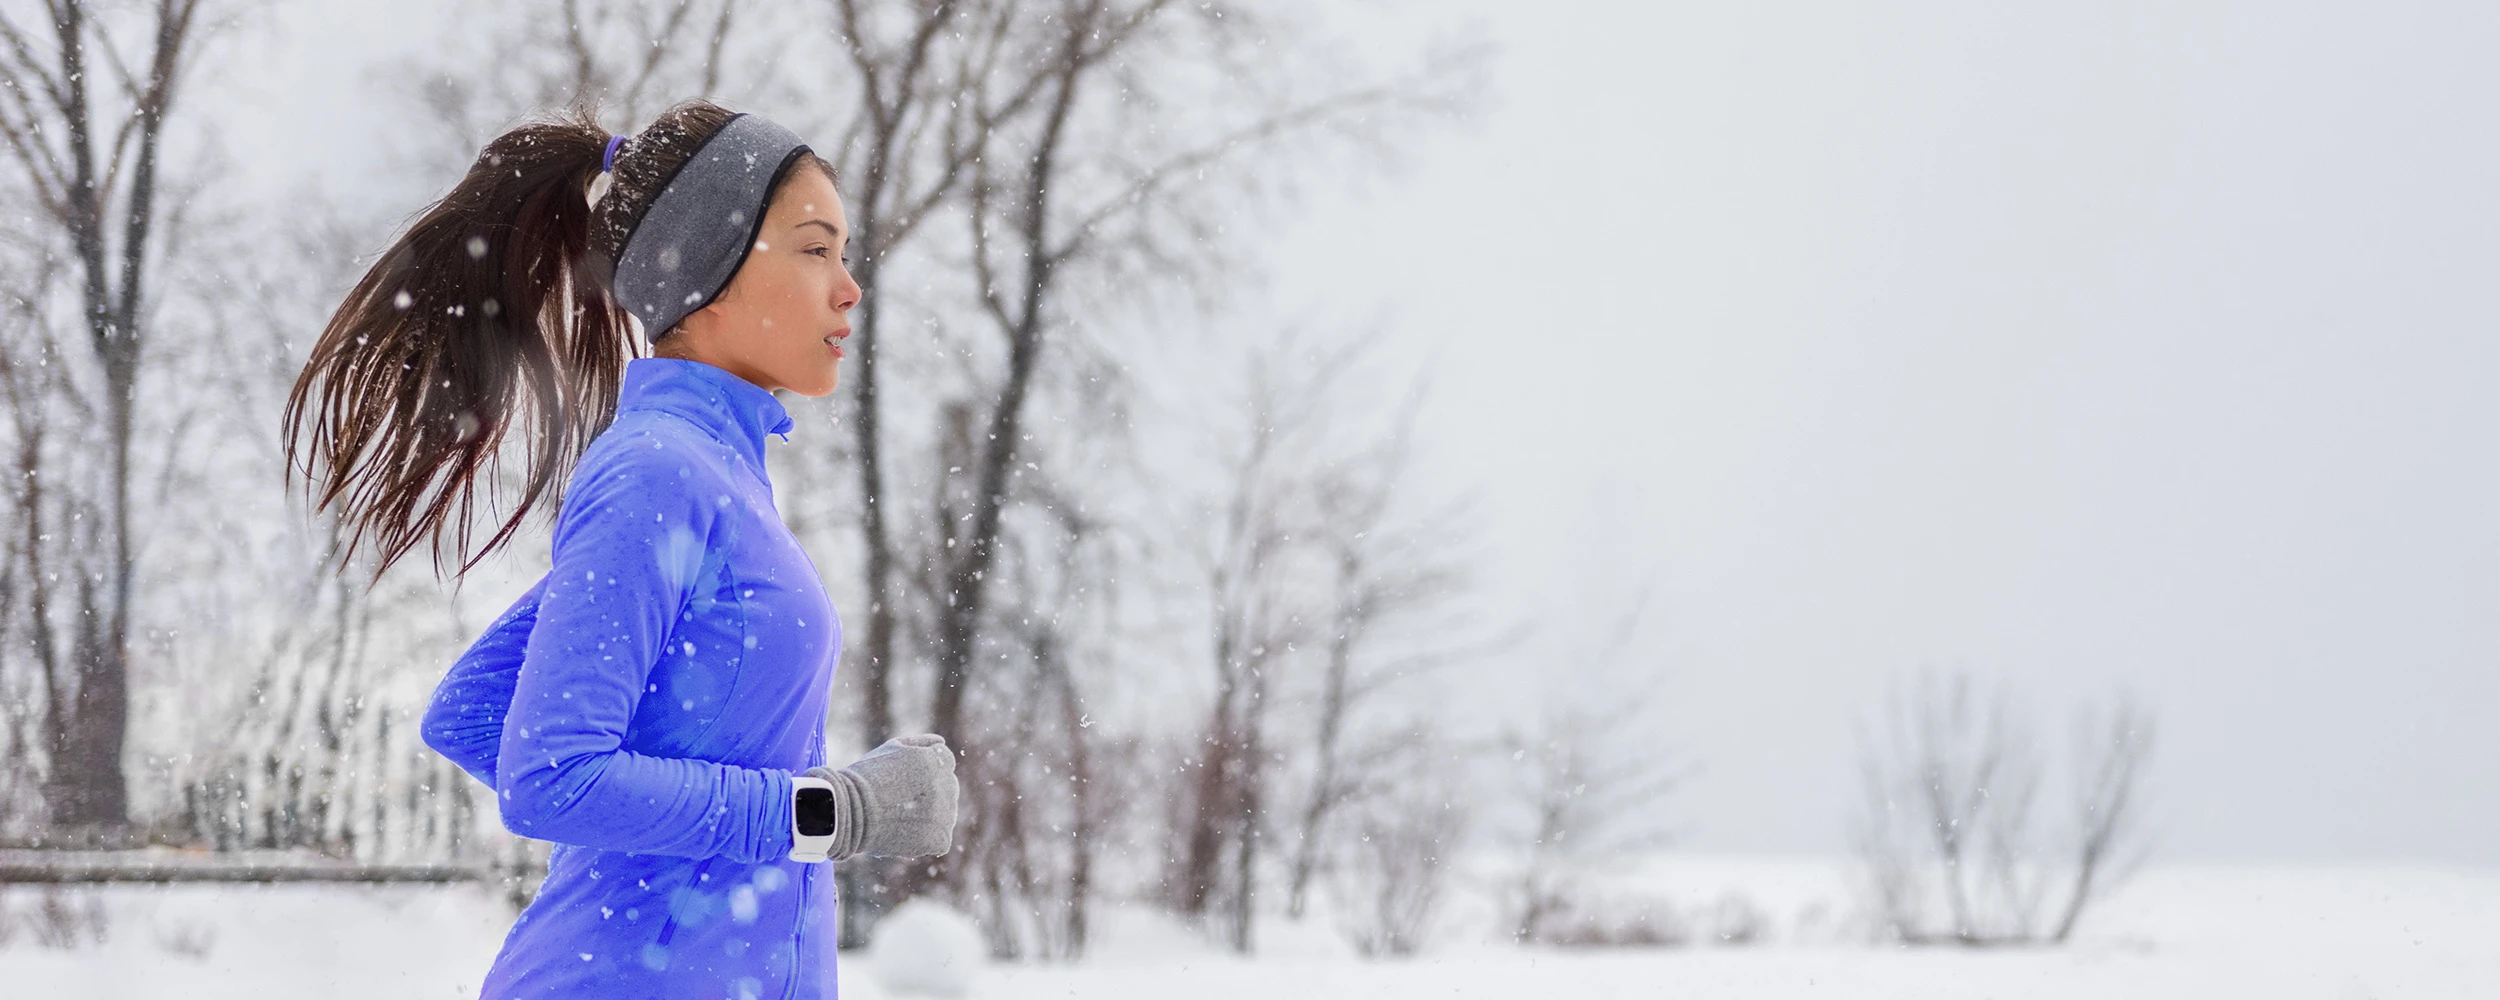 Fleet Feet Fox Valley shares running tips for outdoor winter training